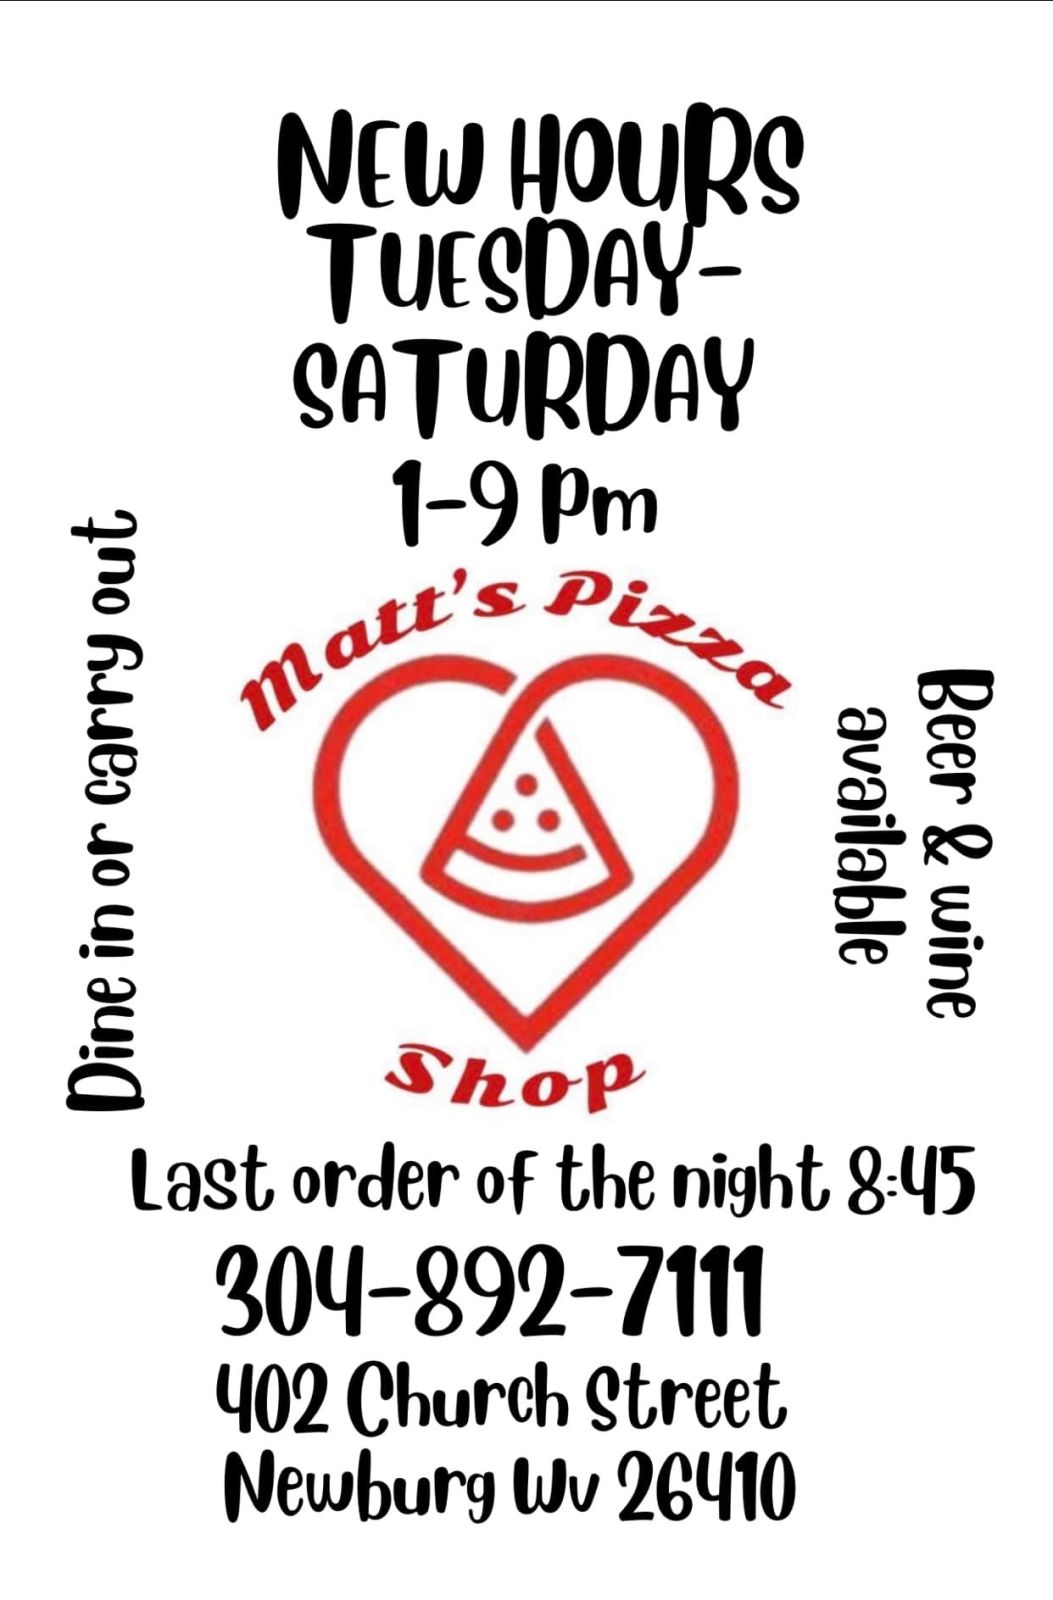 Matt’s Pizza Shop (Newburg) Photo